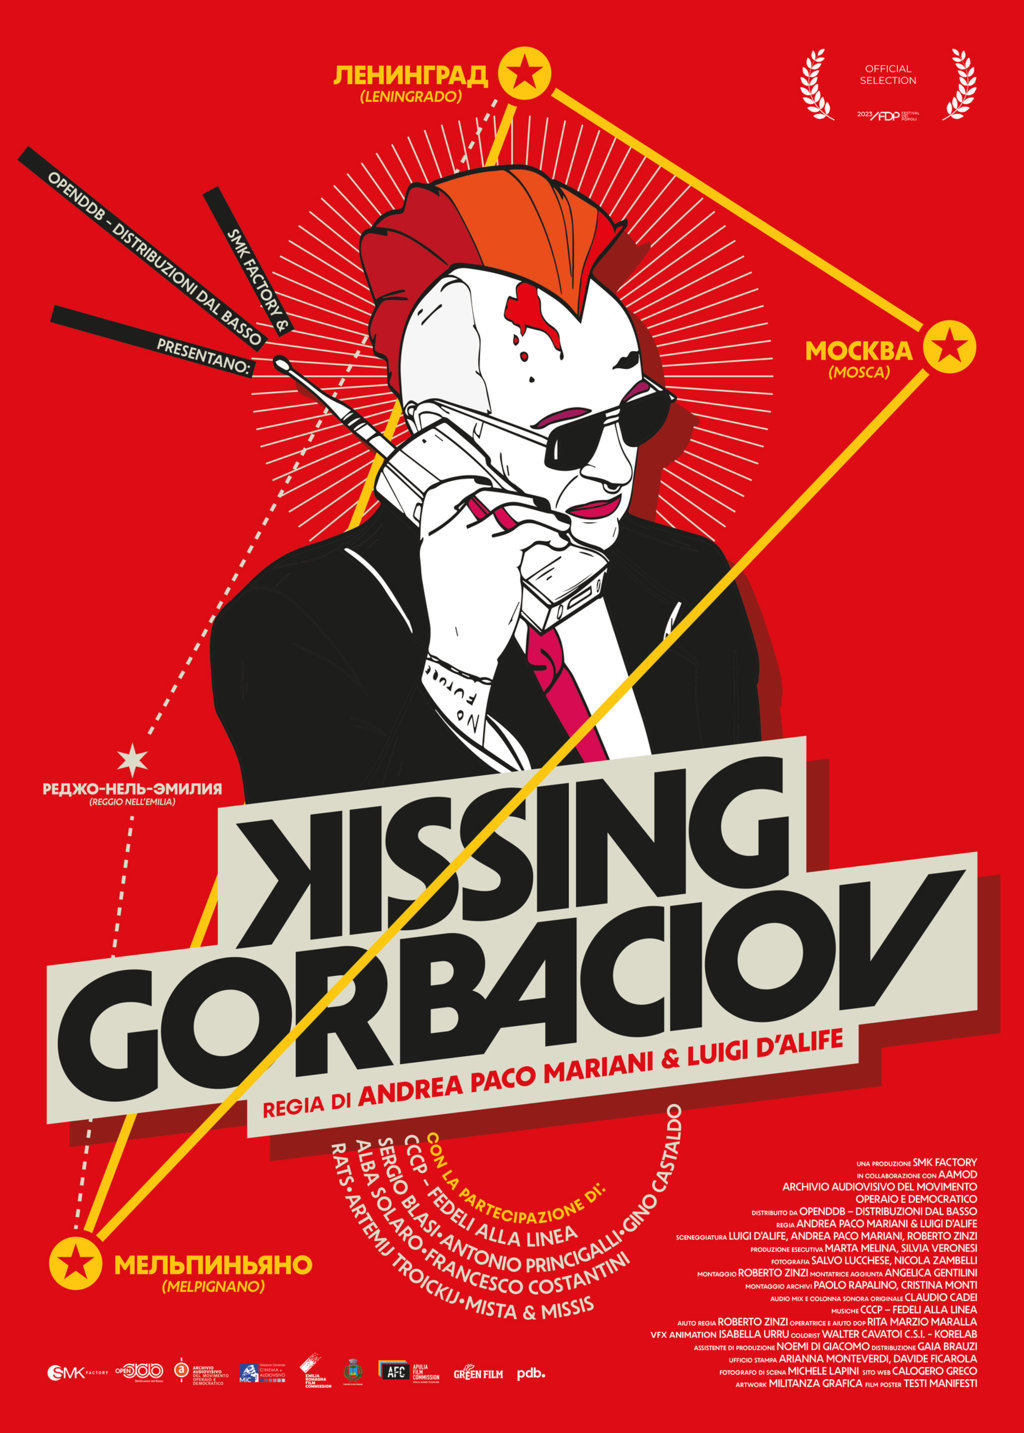 KISSING GORBACIOV in streaming su OPENDDB da lunedì 8 luglio